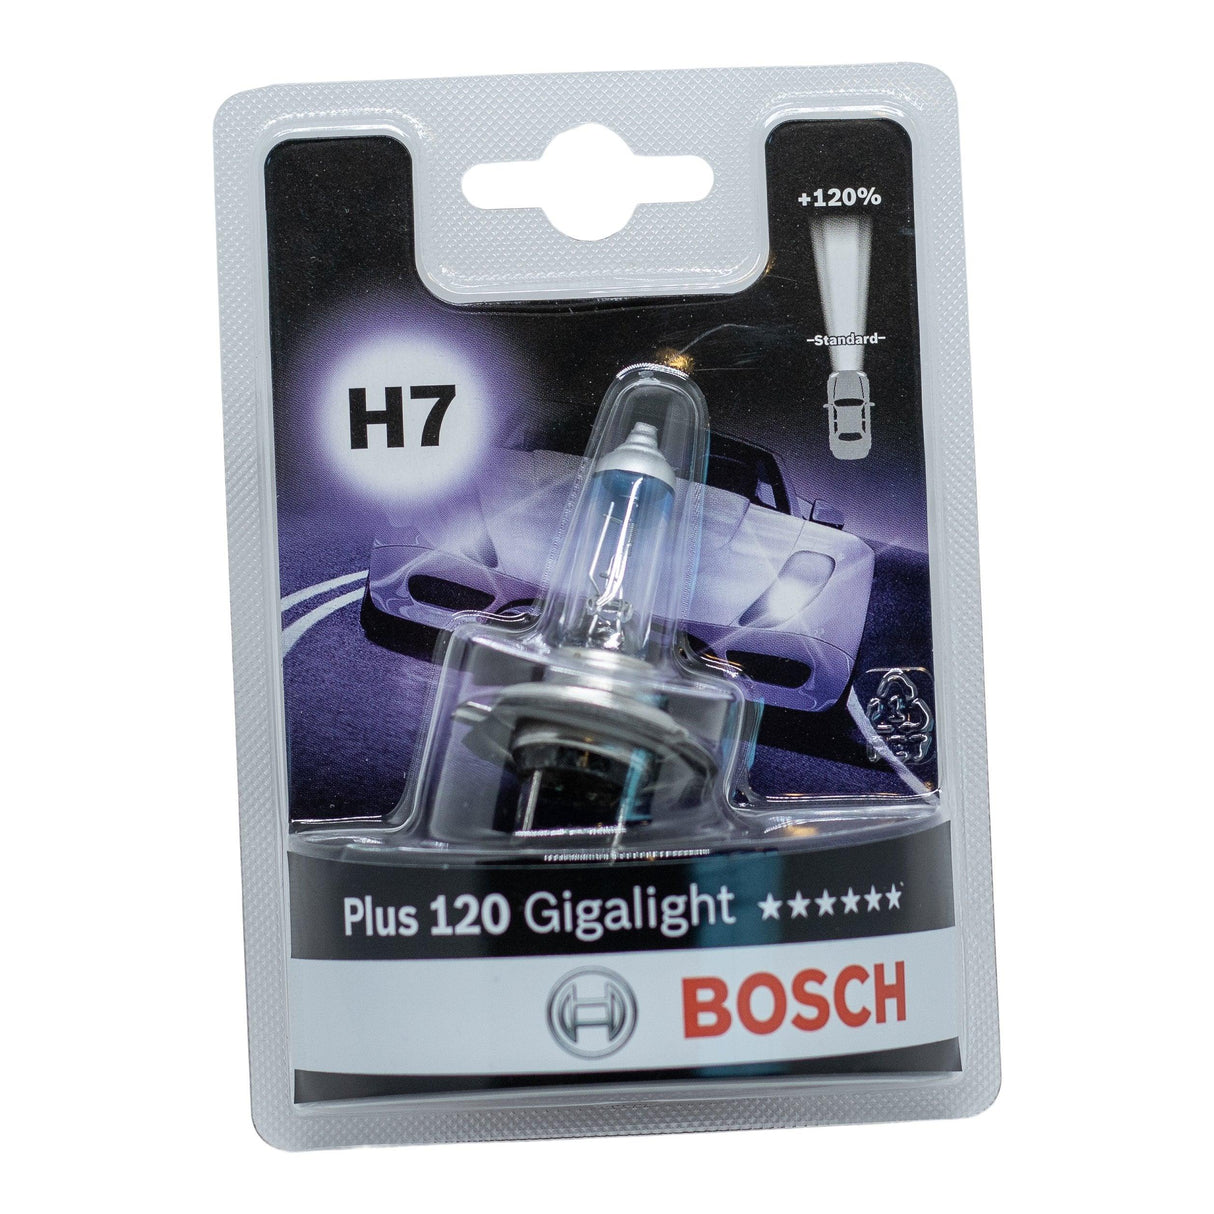 Bosch Giga Light 120 H7 - Xpert Cleaning